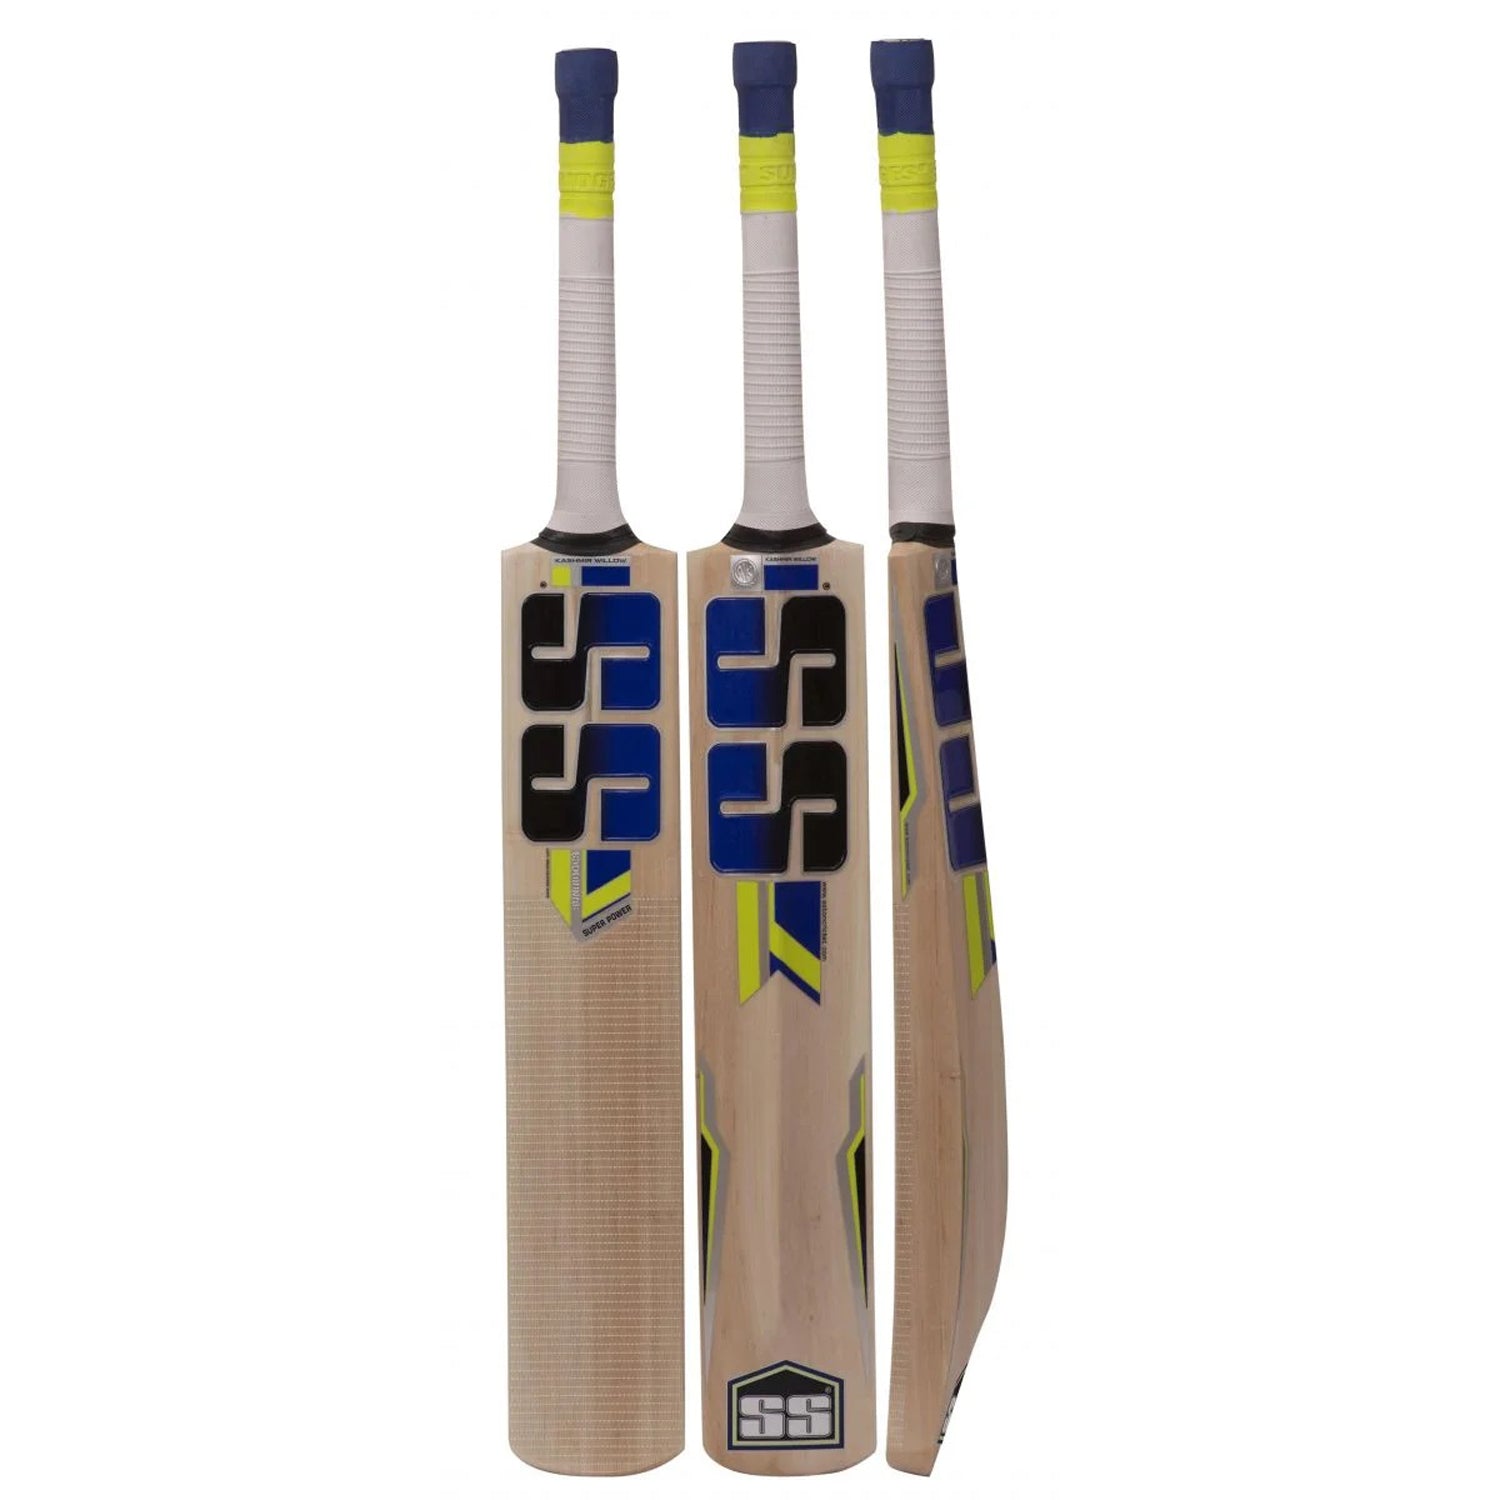 SS Super Power Kashmir Willow Cricket Bat - Best Price online Prokicksports.com